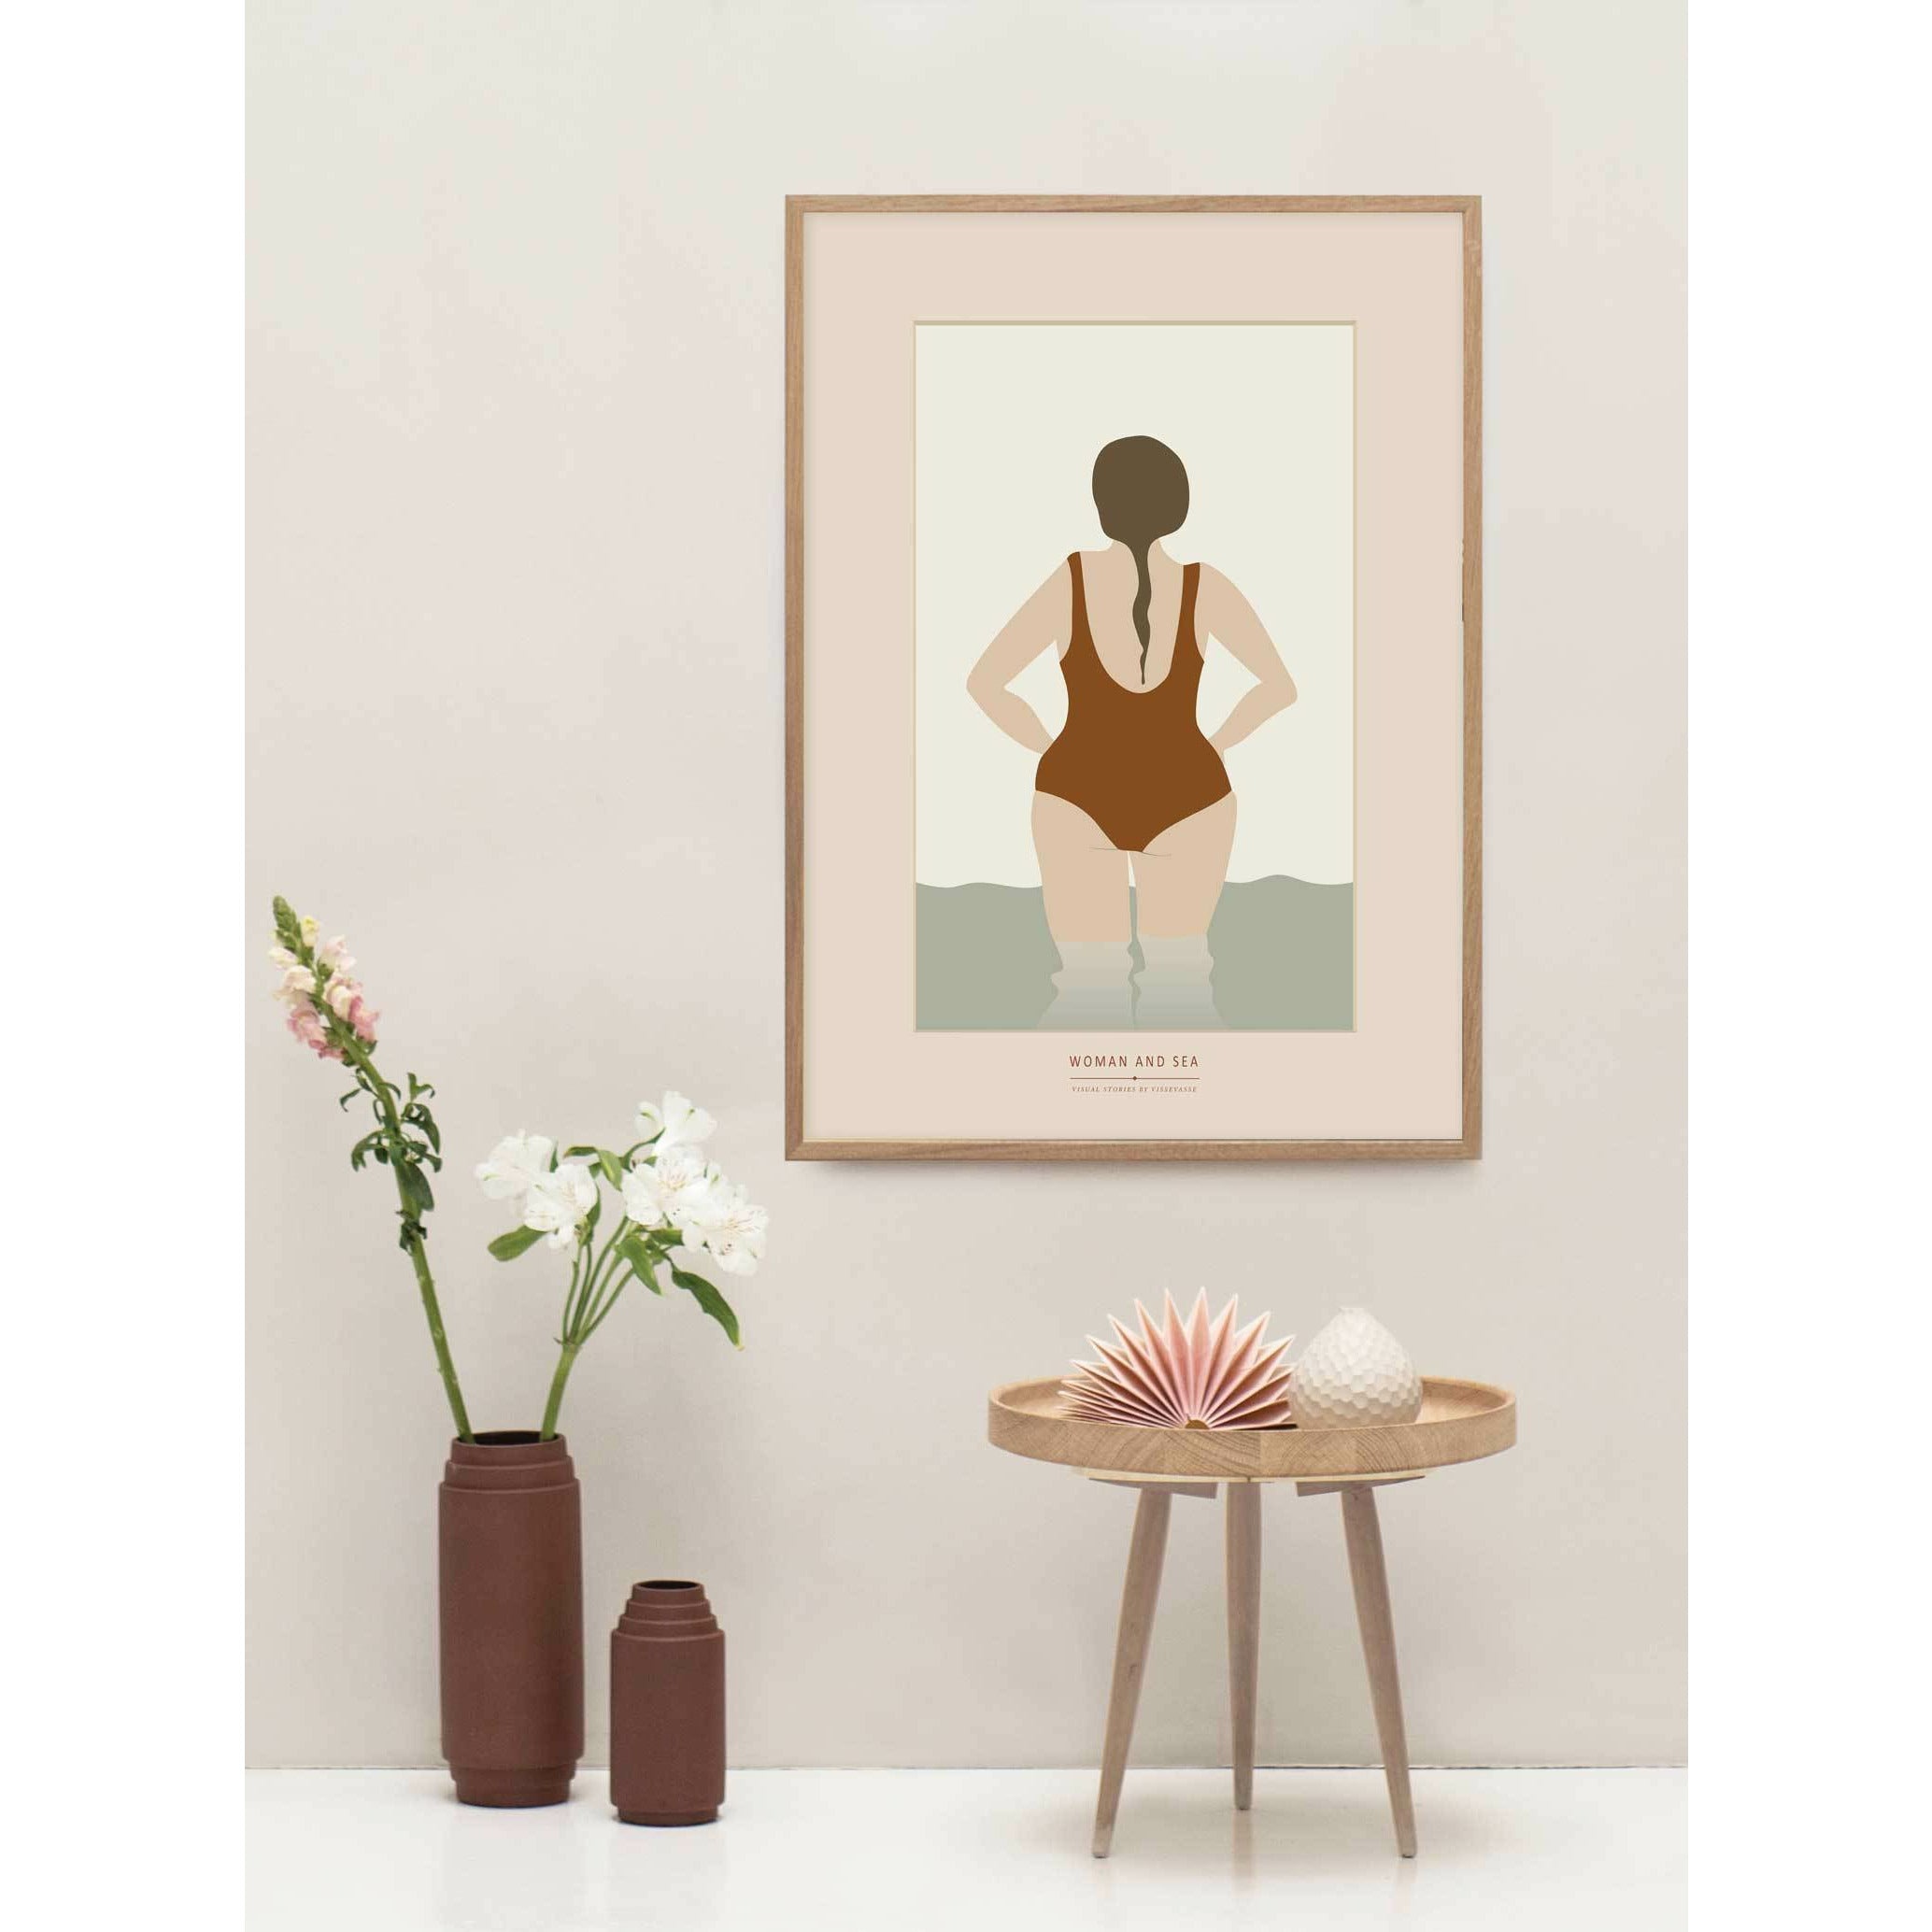 Vissevasse Kvinde og havplakaten, 50 x70 cm